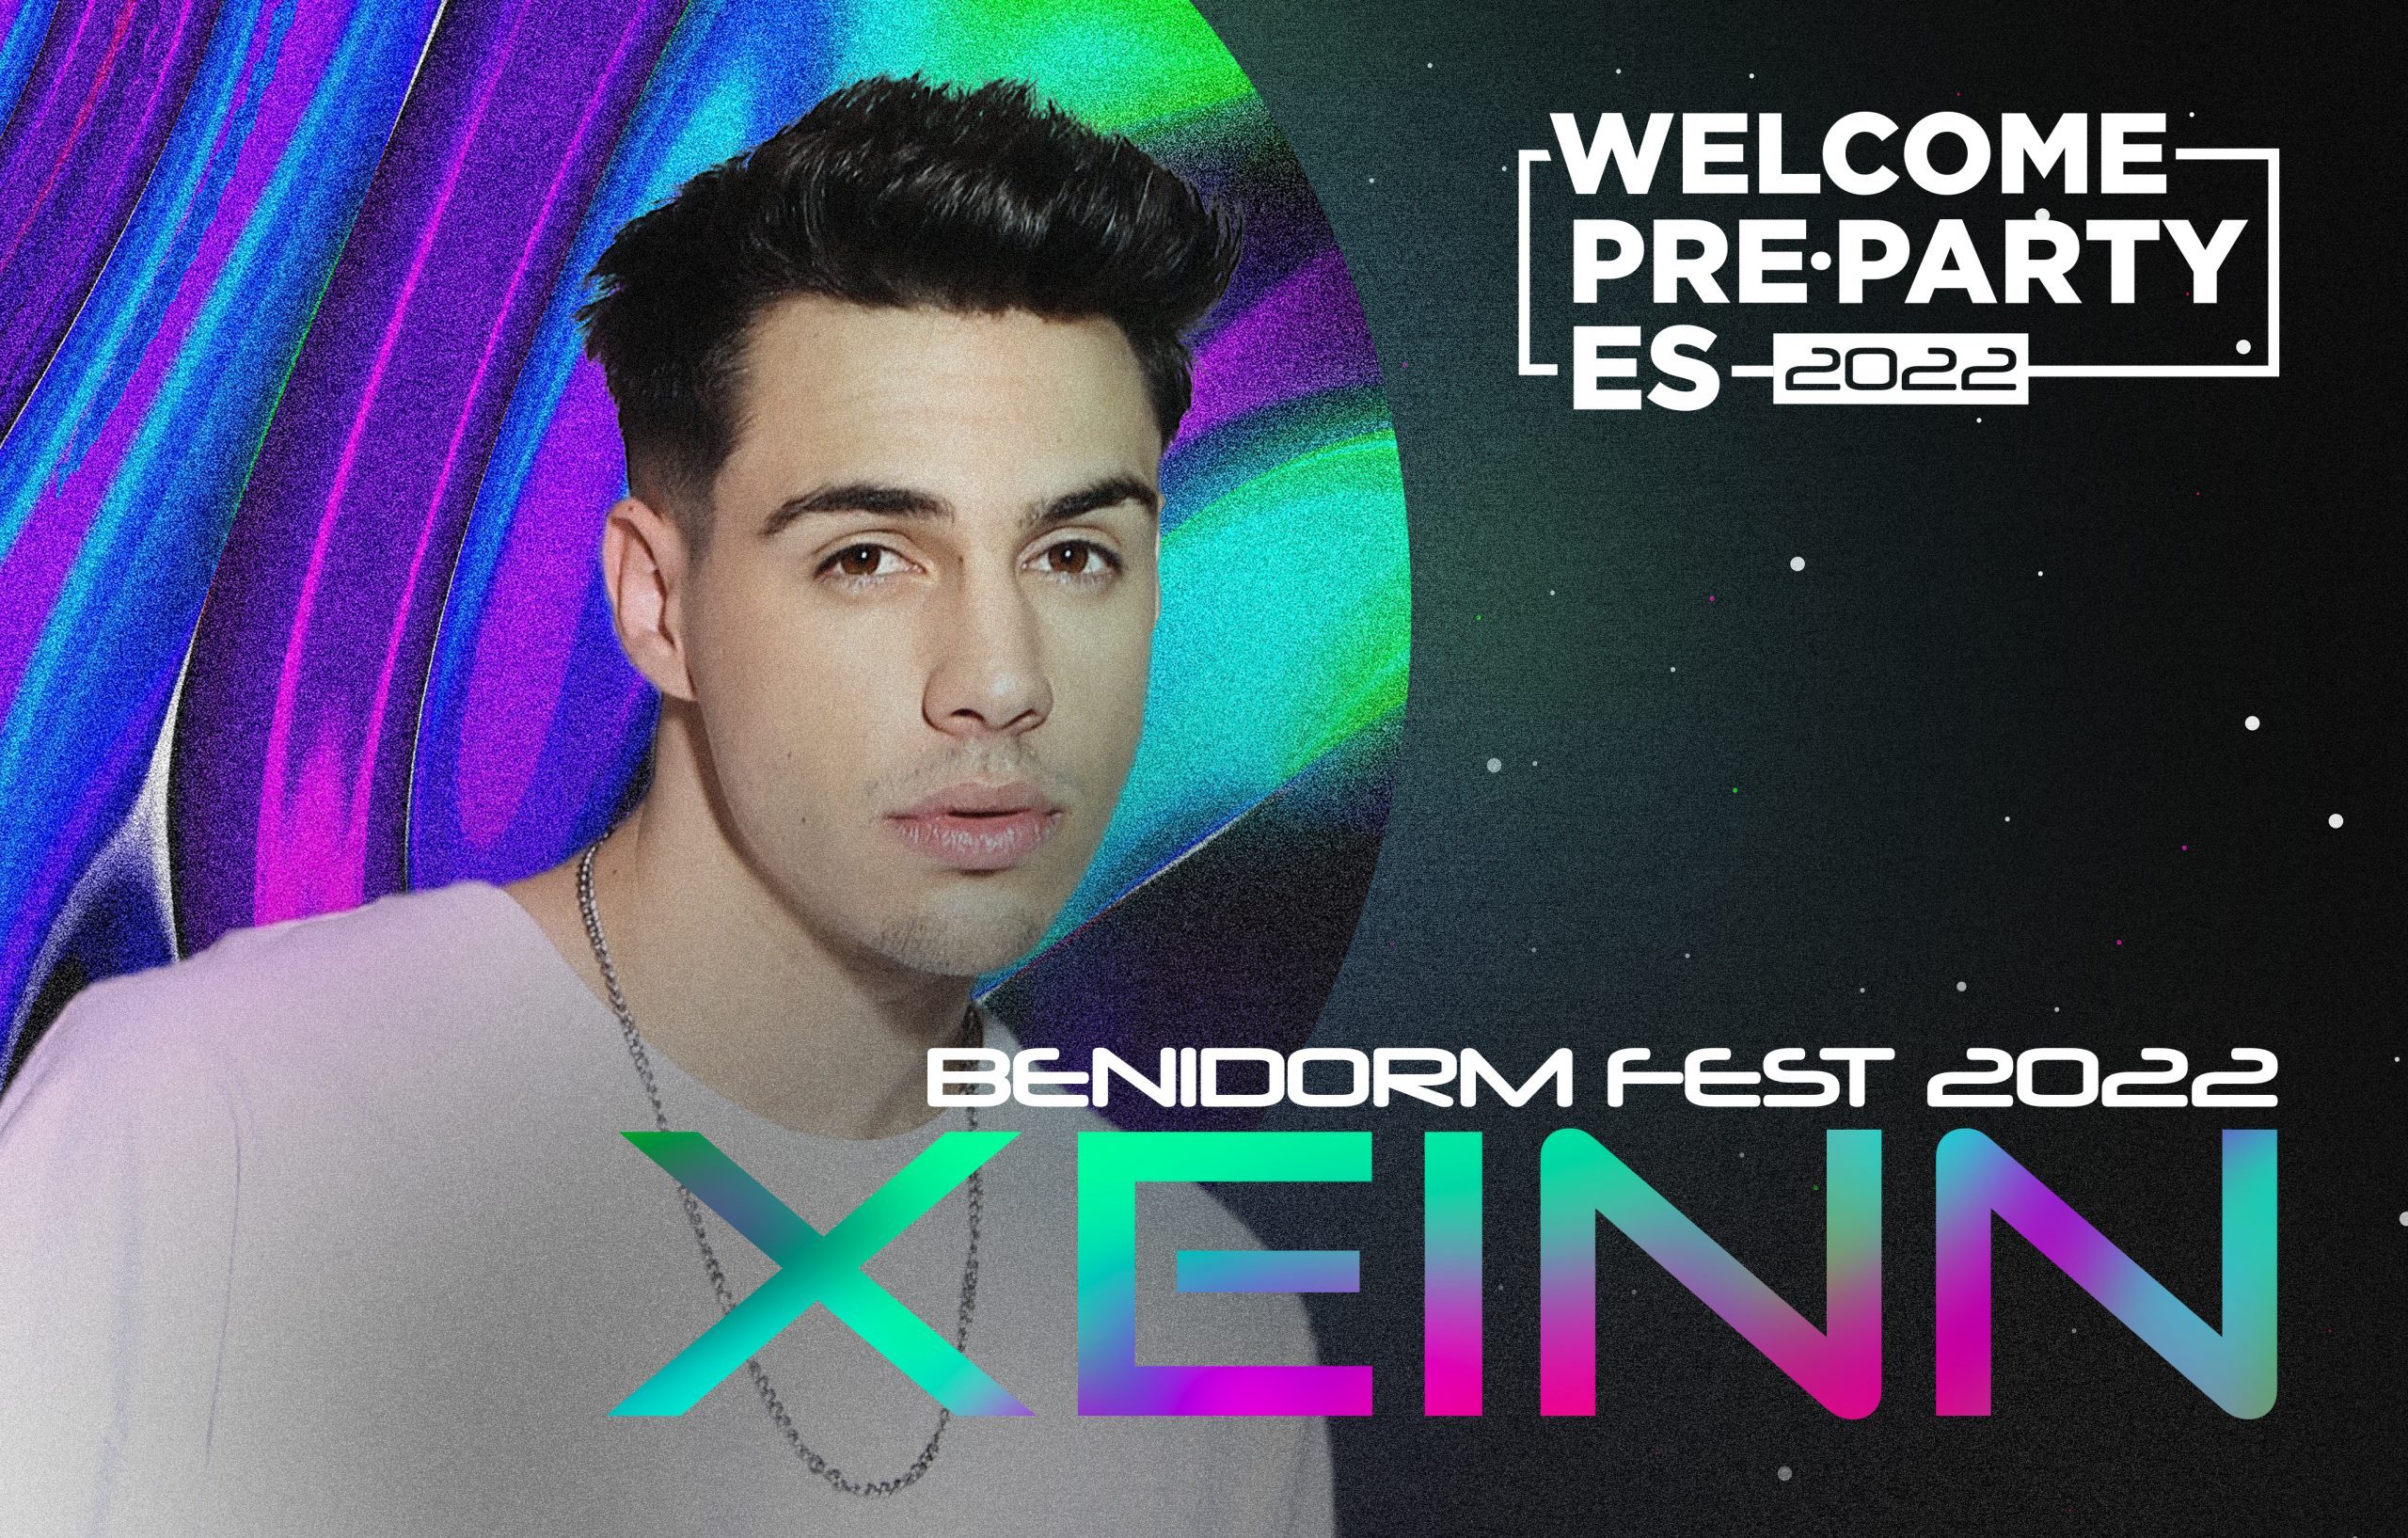 De Benidorm a Madrid: ¡Xeinn también cantará en la Welcome PrePartyES 2022!